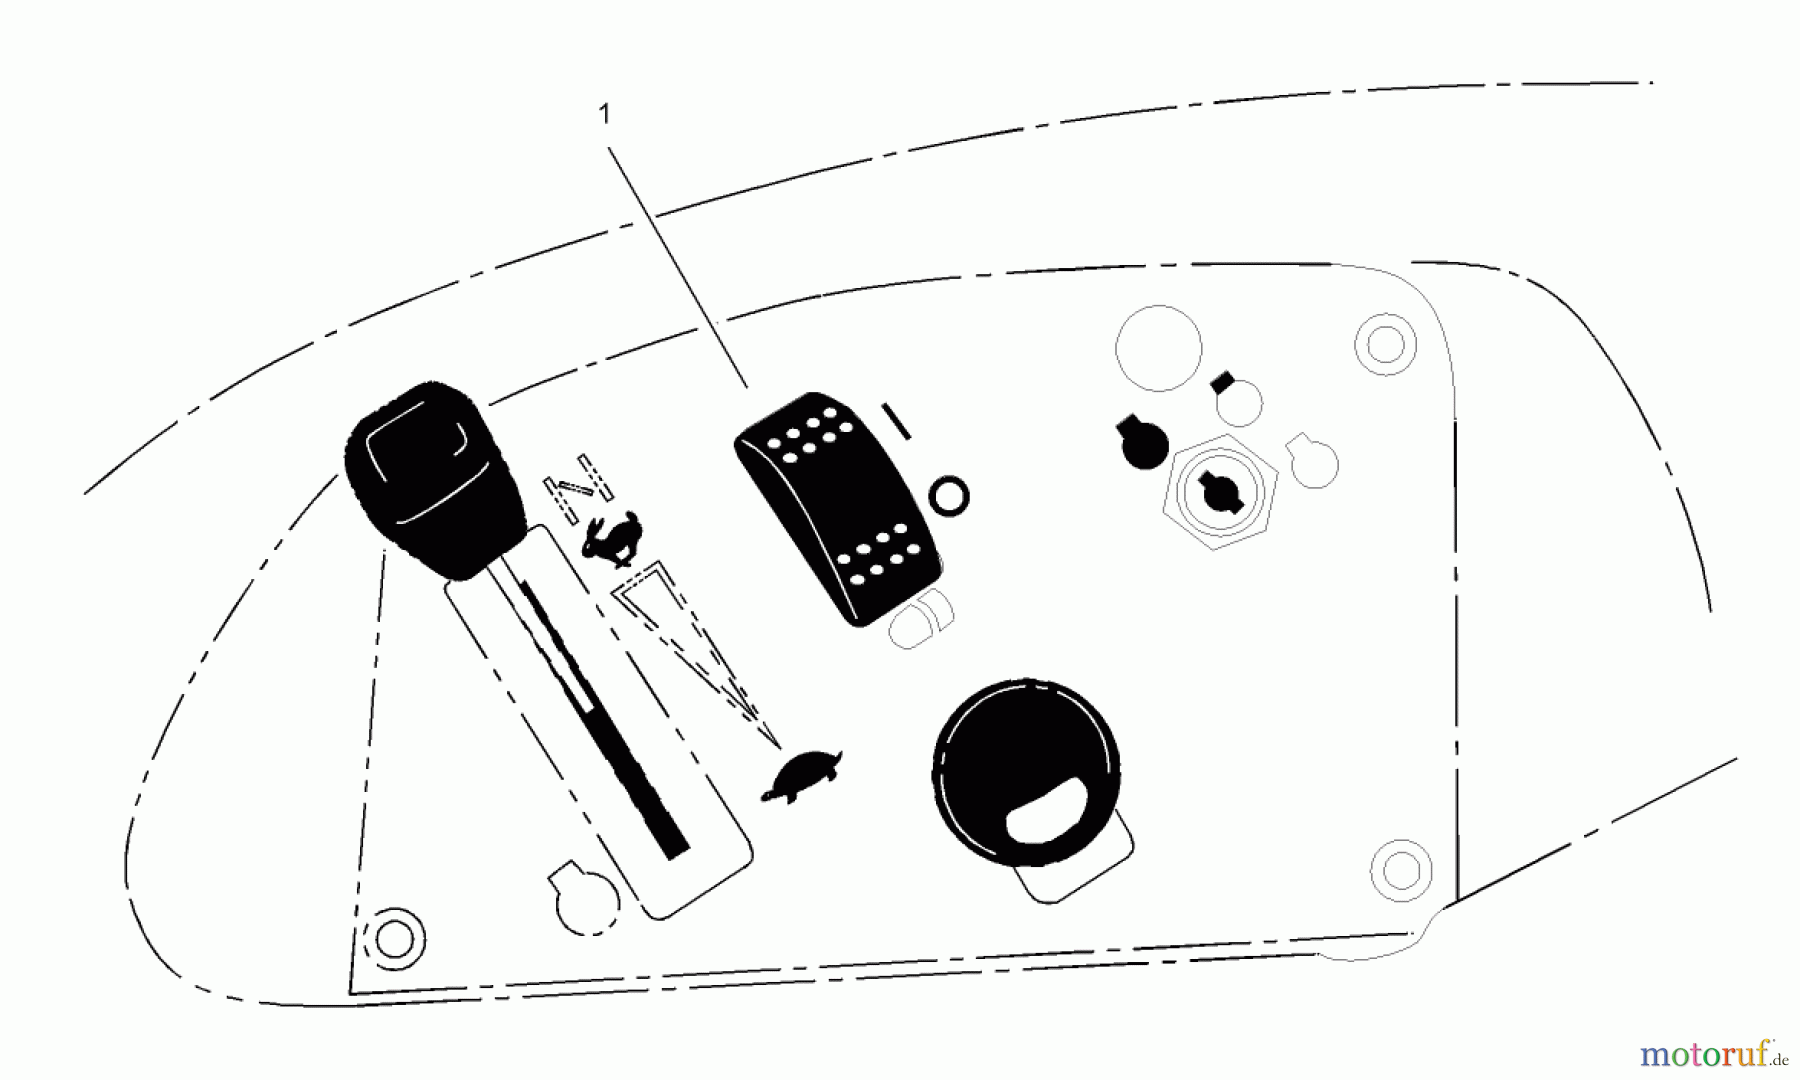  Toro Neu Accessories, Mower 107-9130 - Toro Light Kit, Zero-Turn-Radius Riding Mower SWITCH ASSEMBLY